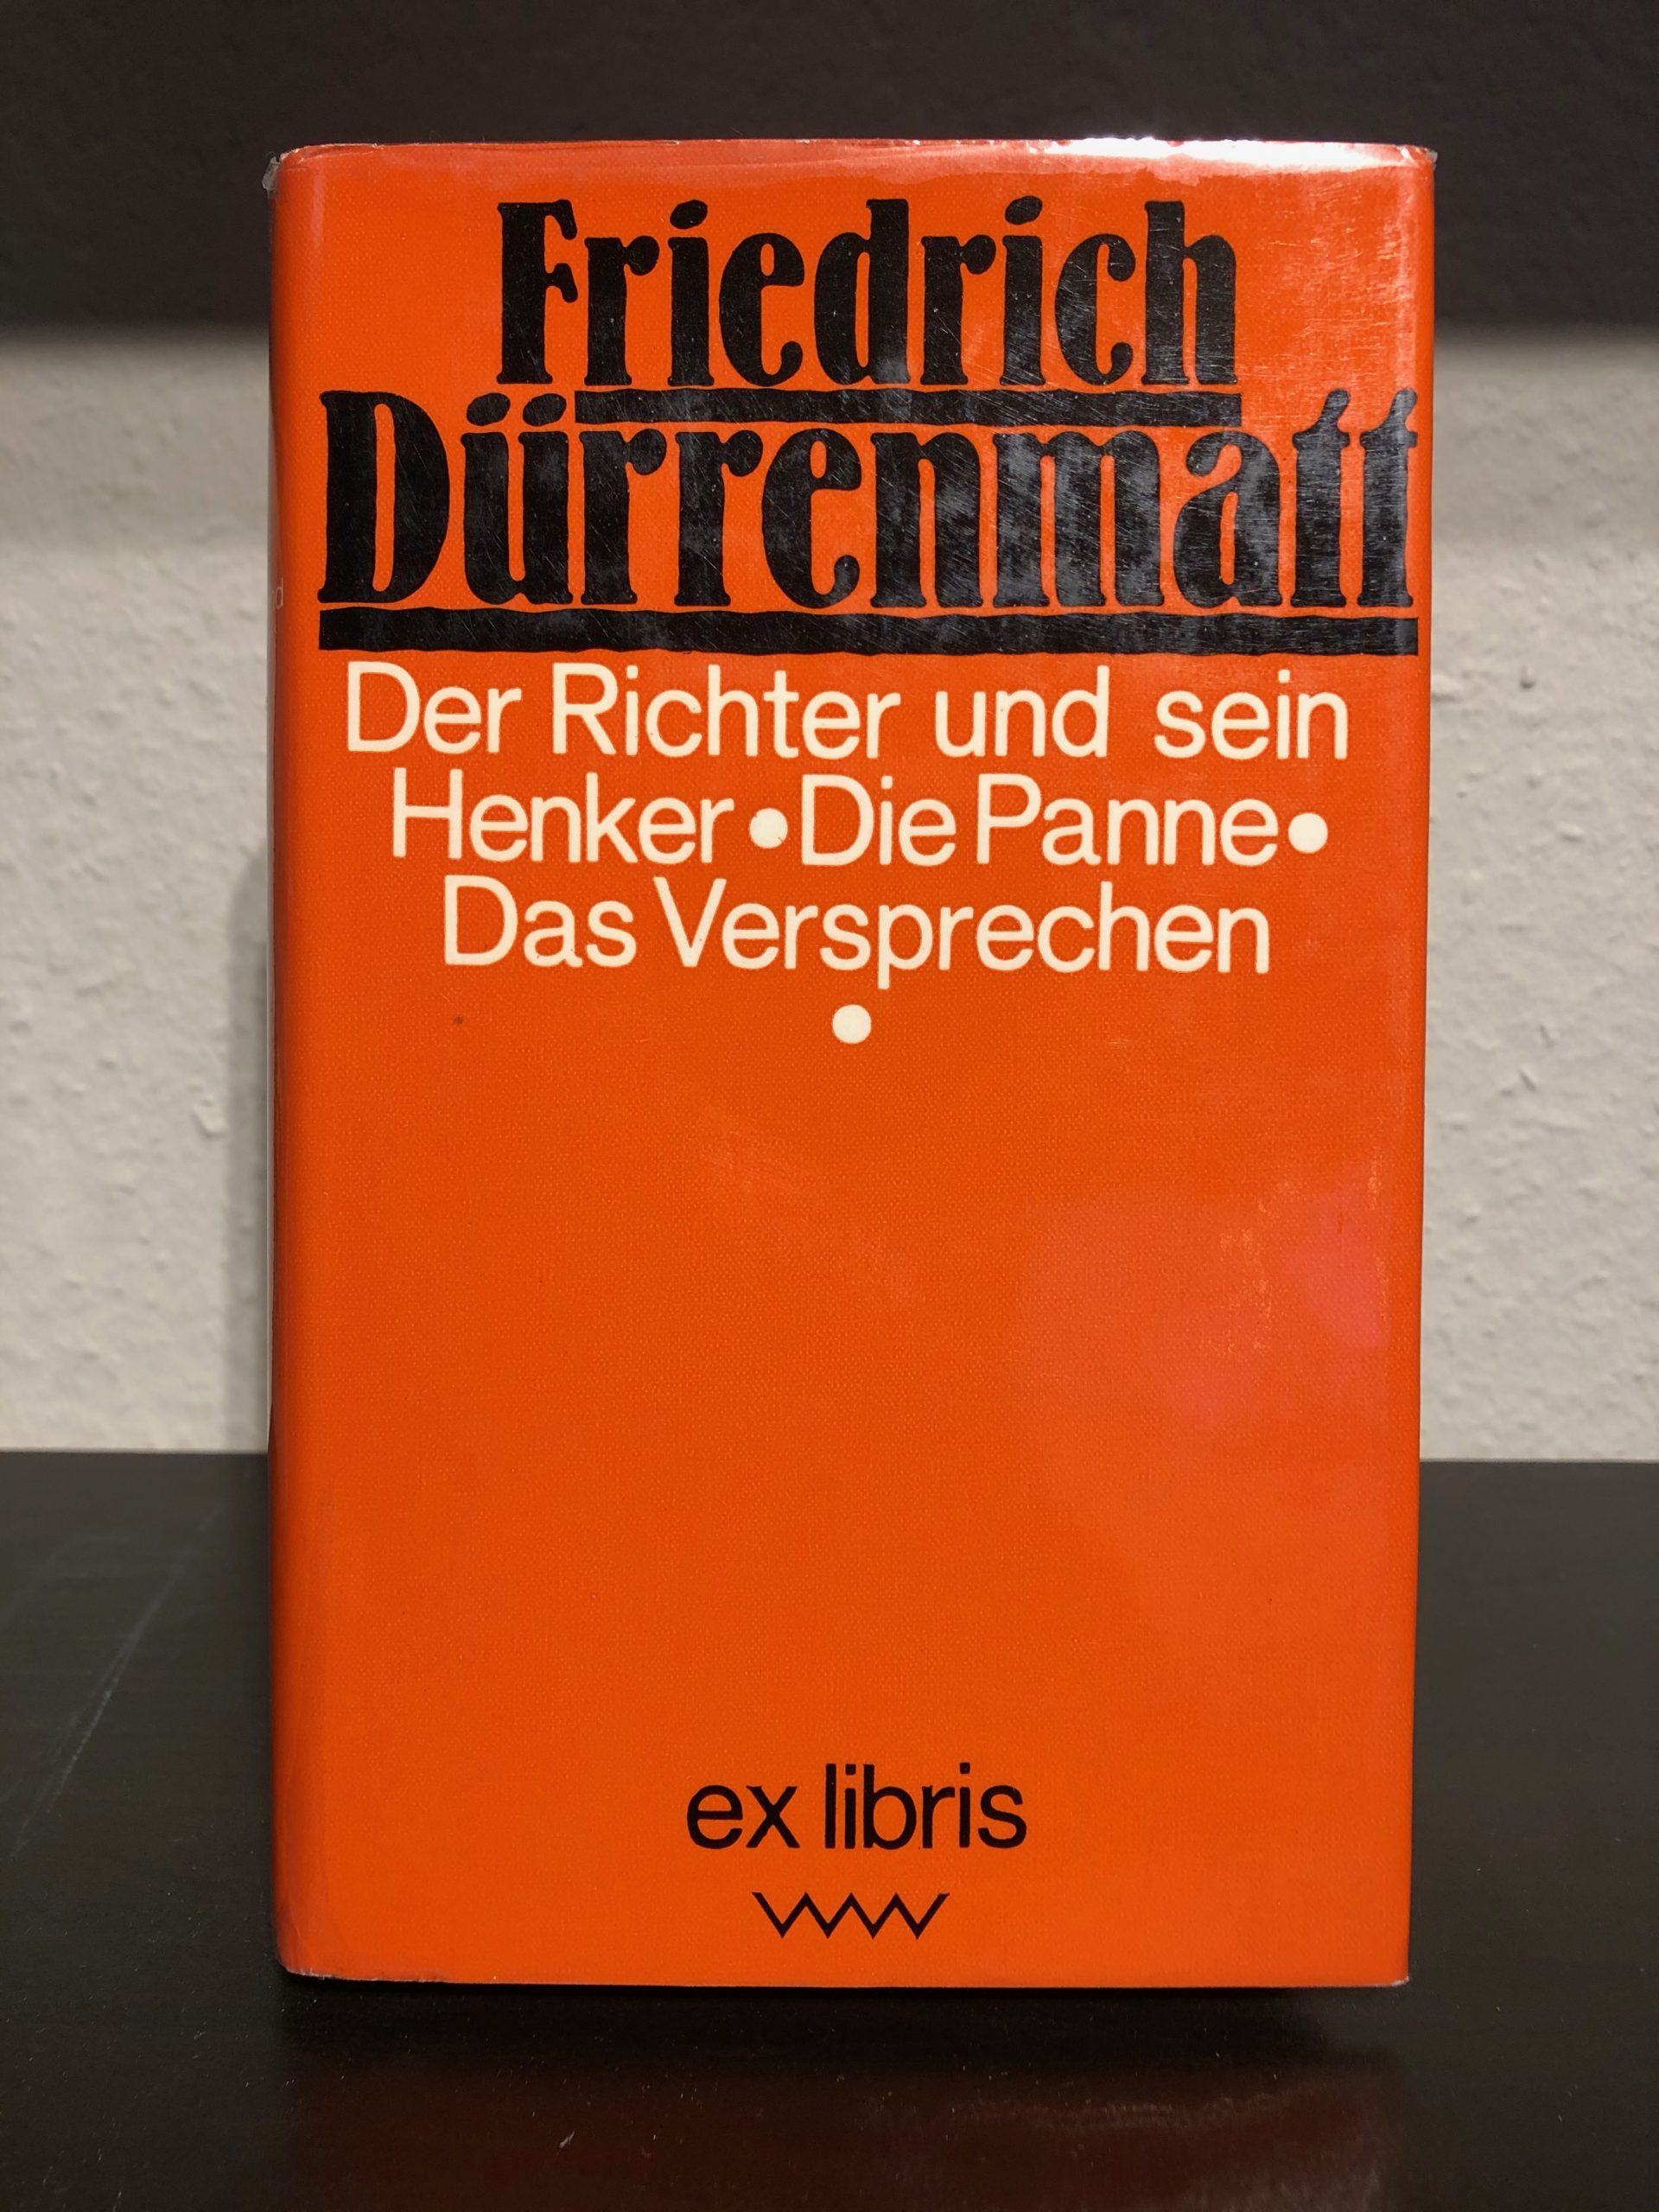 Der Richter und sein Henker - Friedrich Dürrenmatt main image